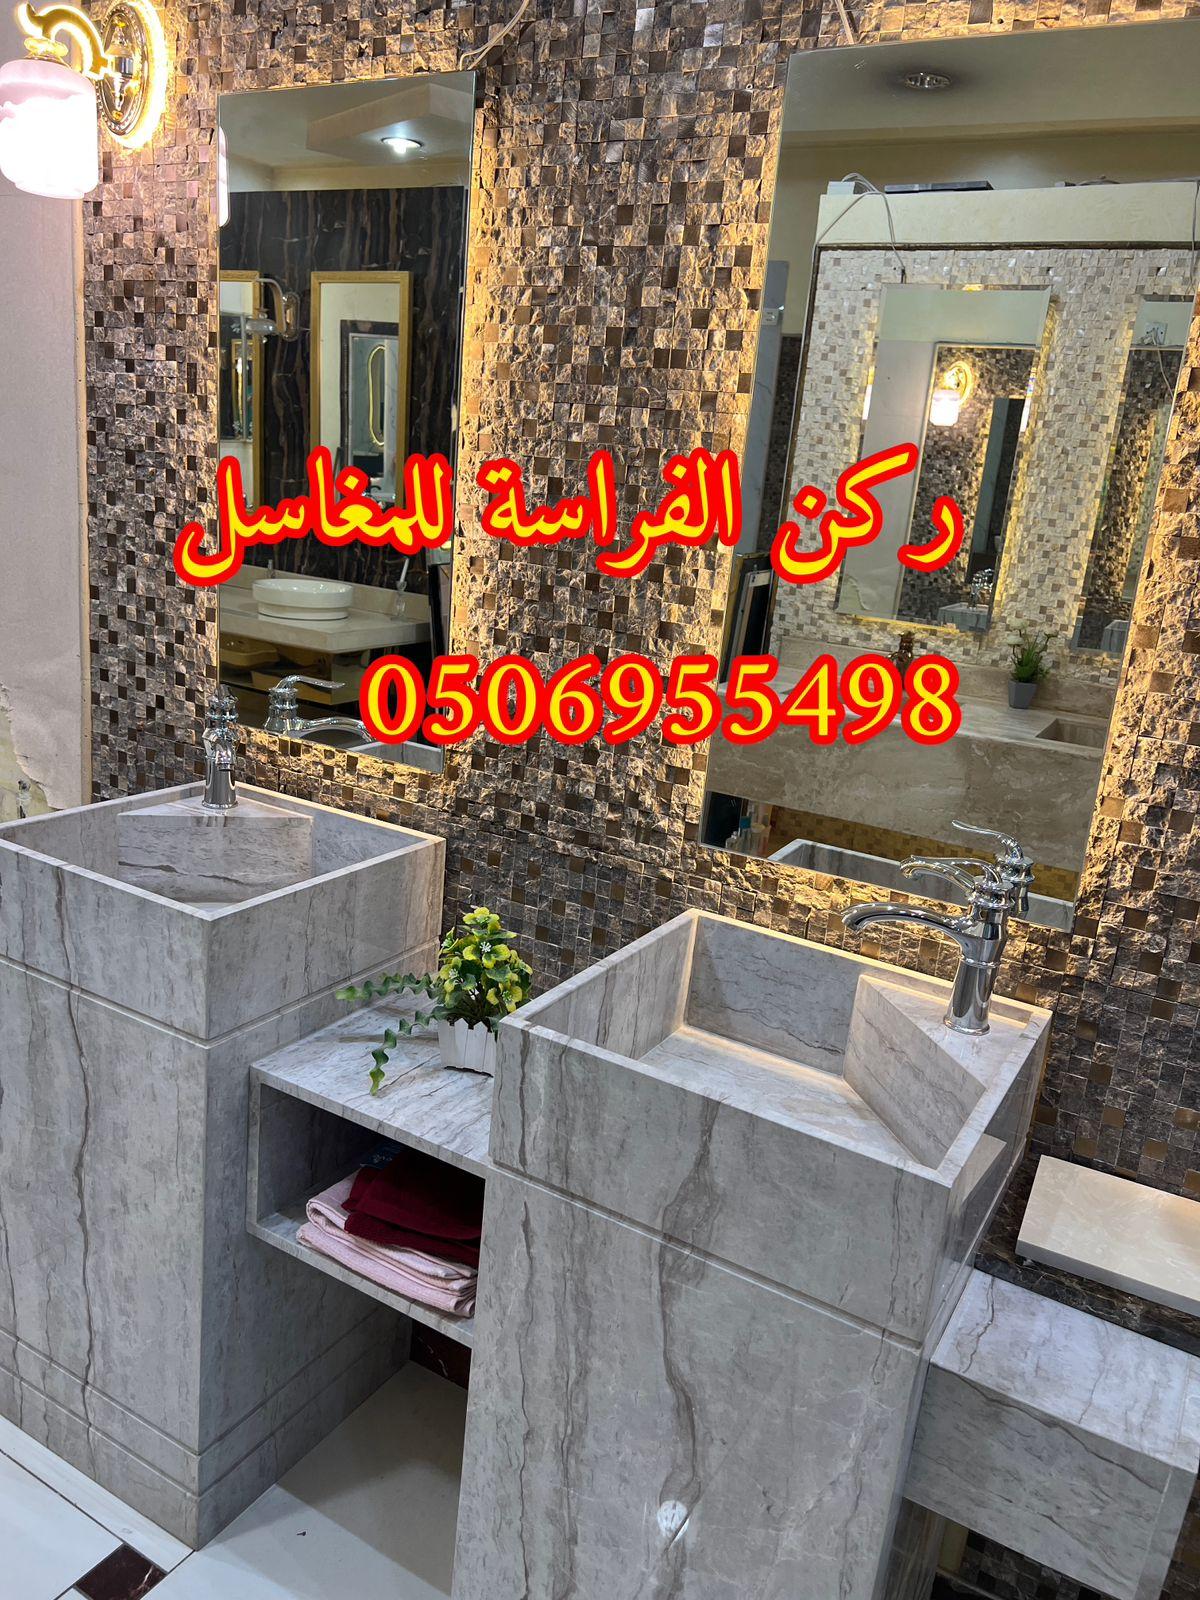 تصاميم مغاسل رخام للمجالس في الرياض,0506955498 851250385